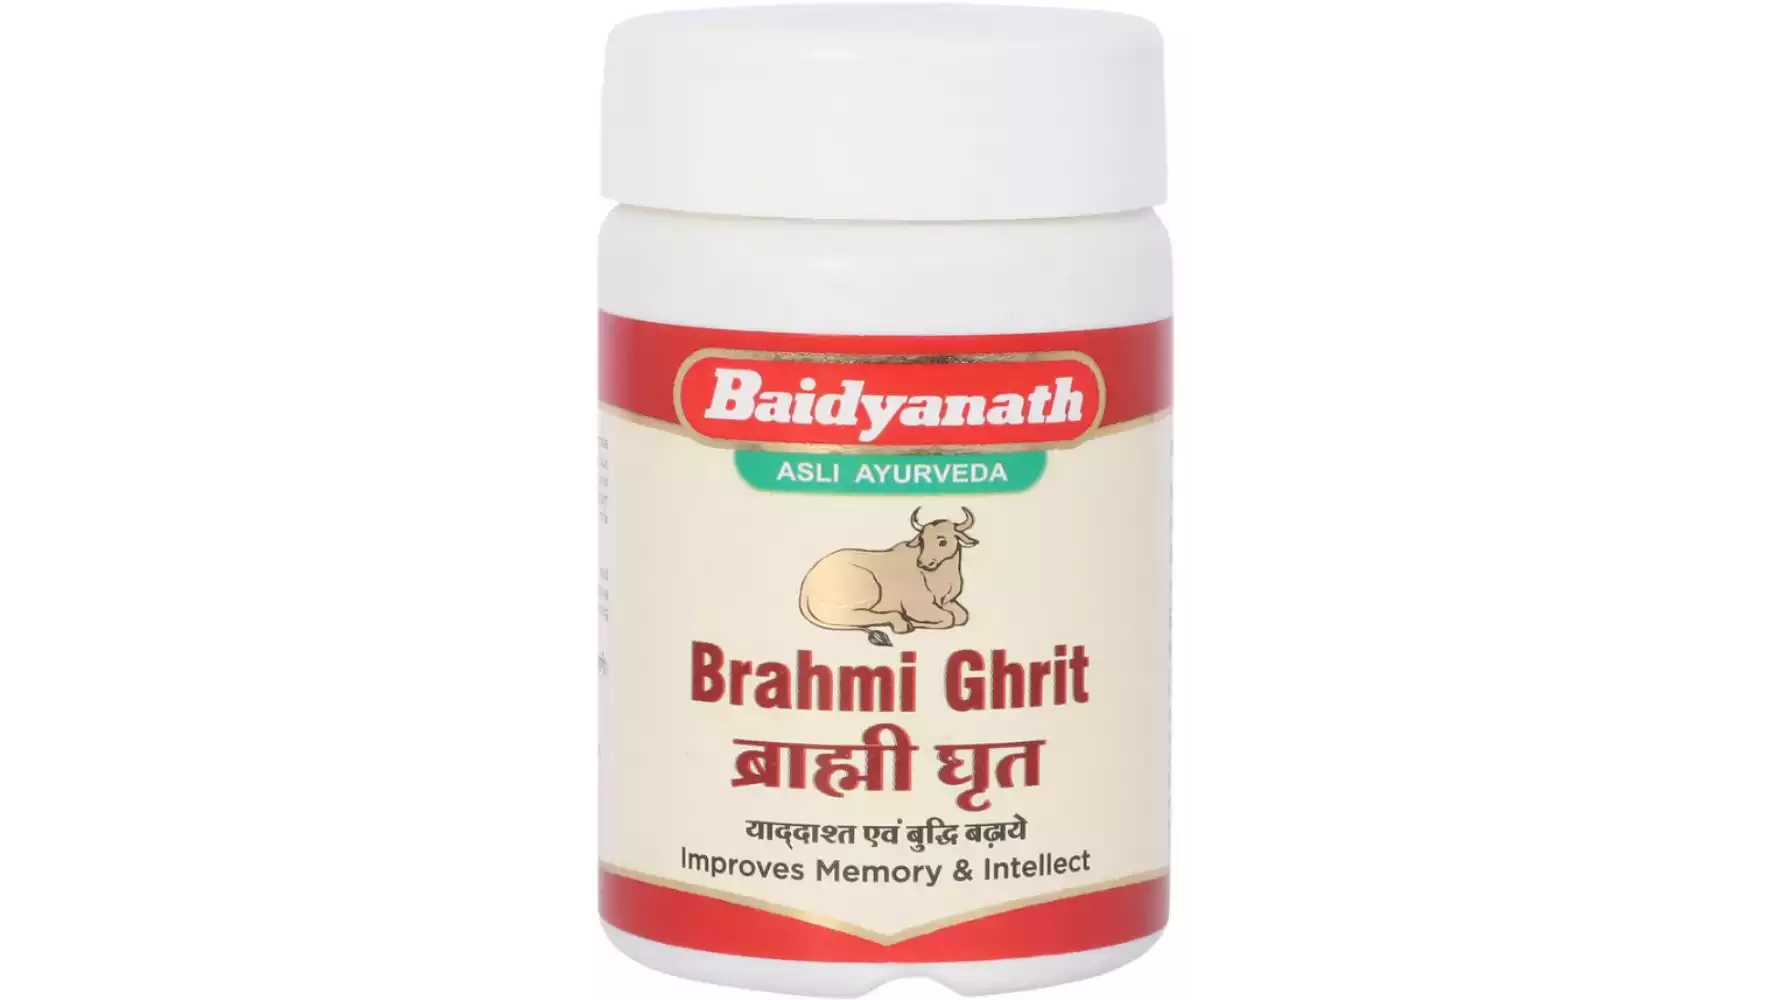 Baidyanath Brahmi Ghrit (100g)